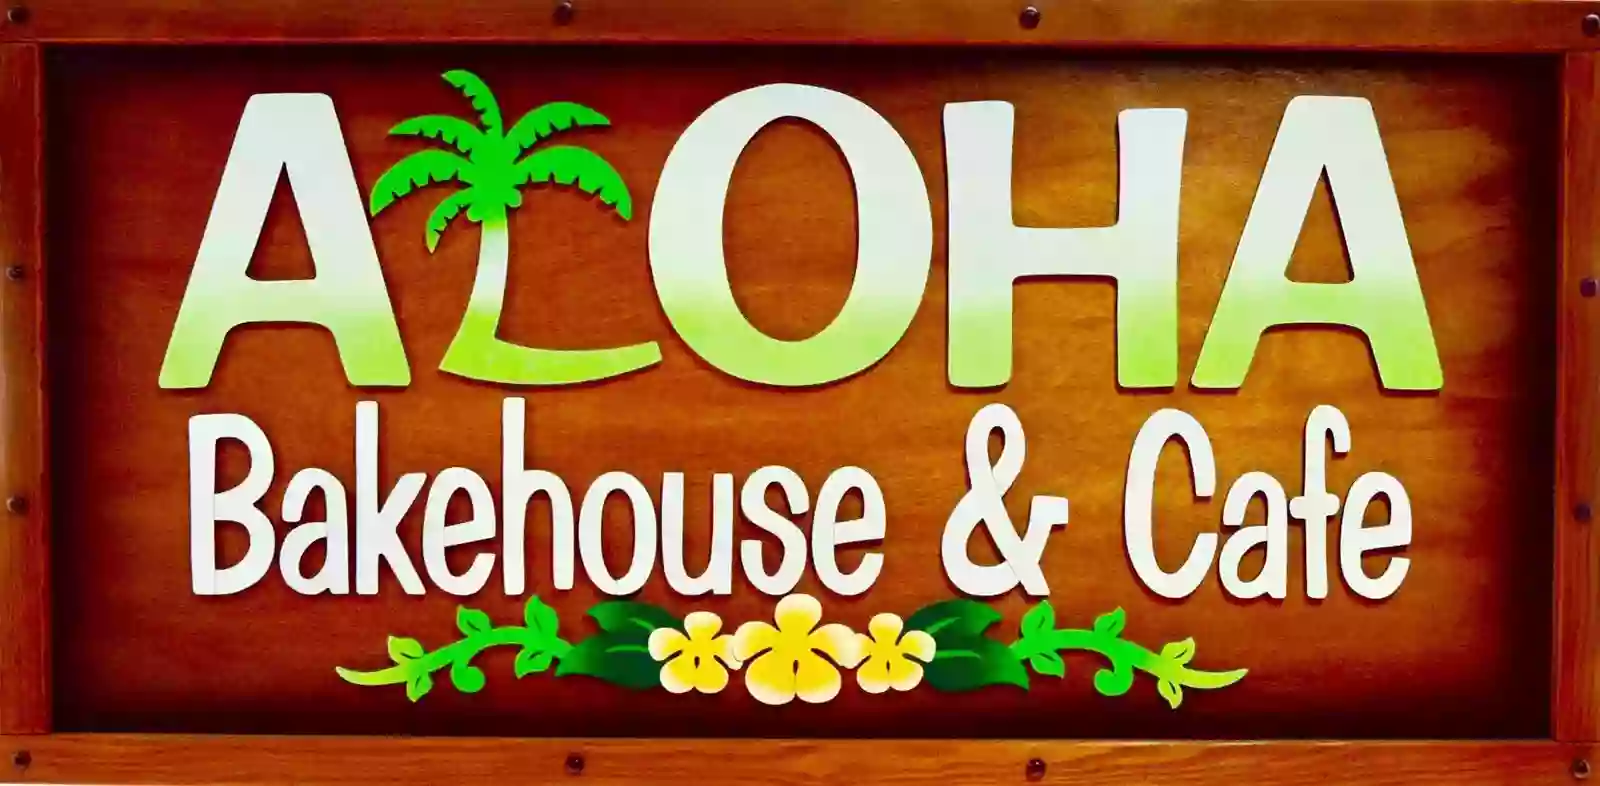 Aloha Bakehouse & Cafe